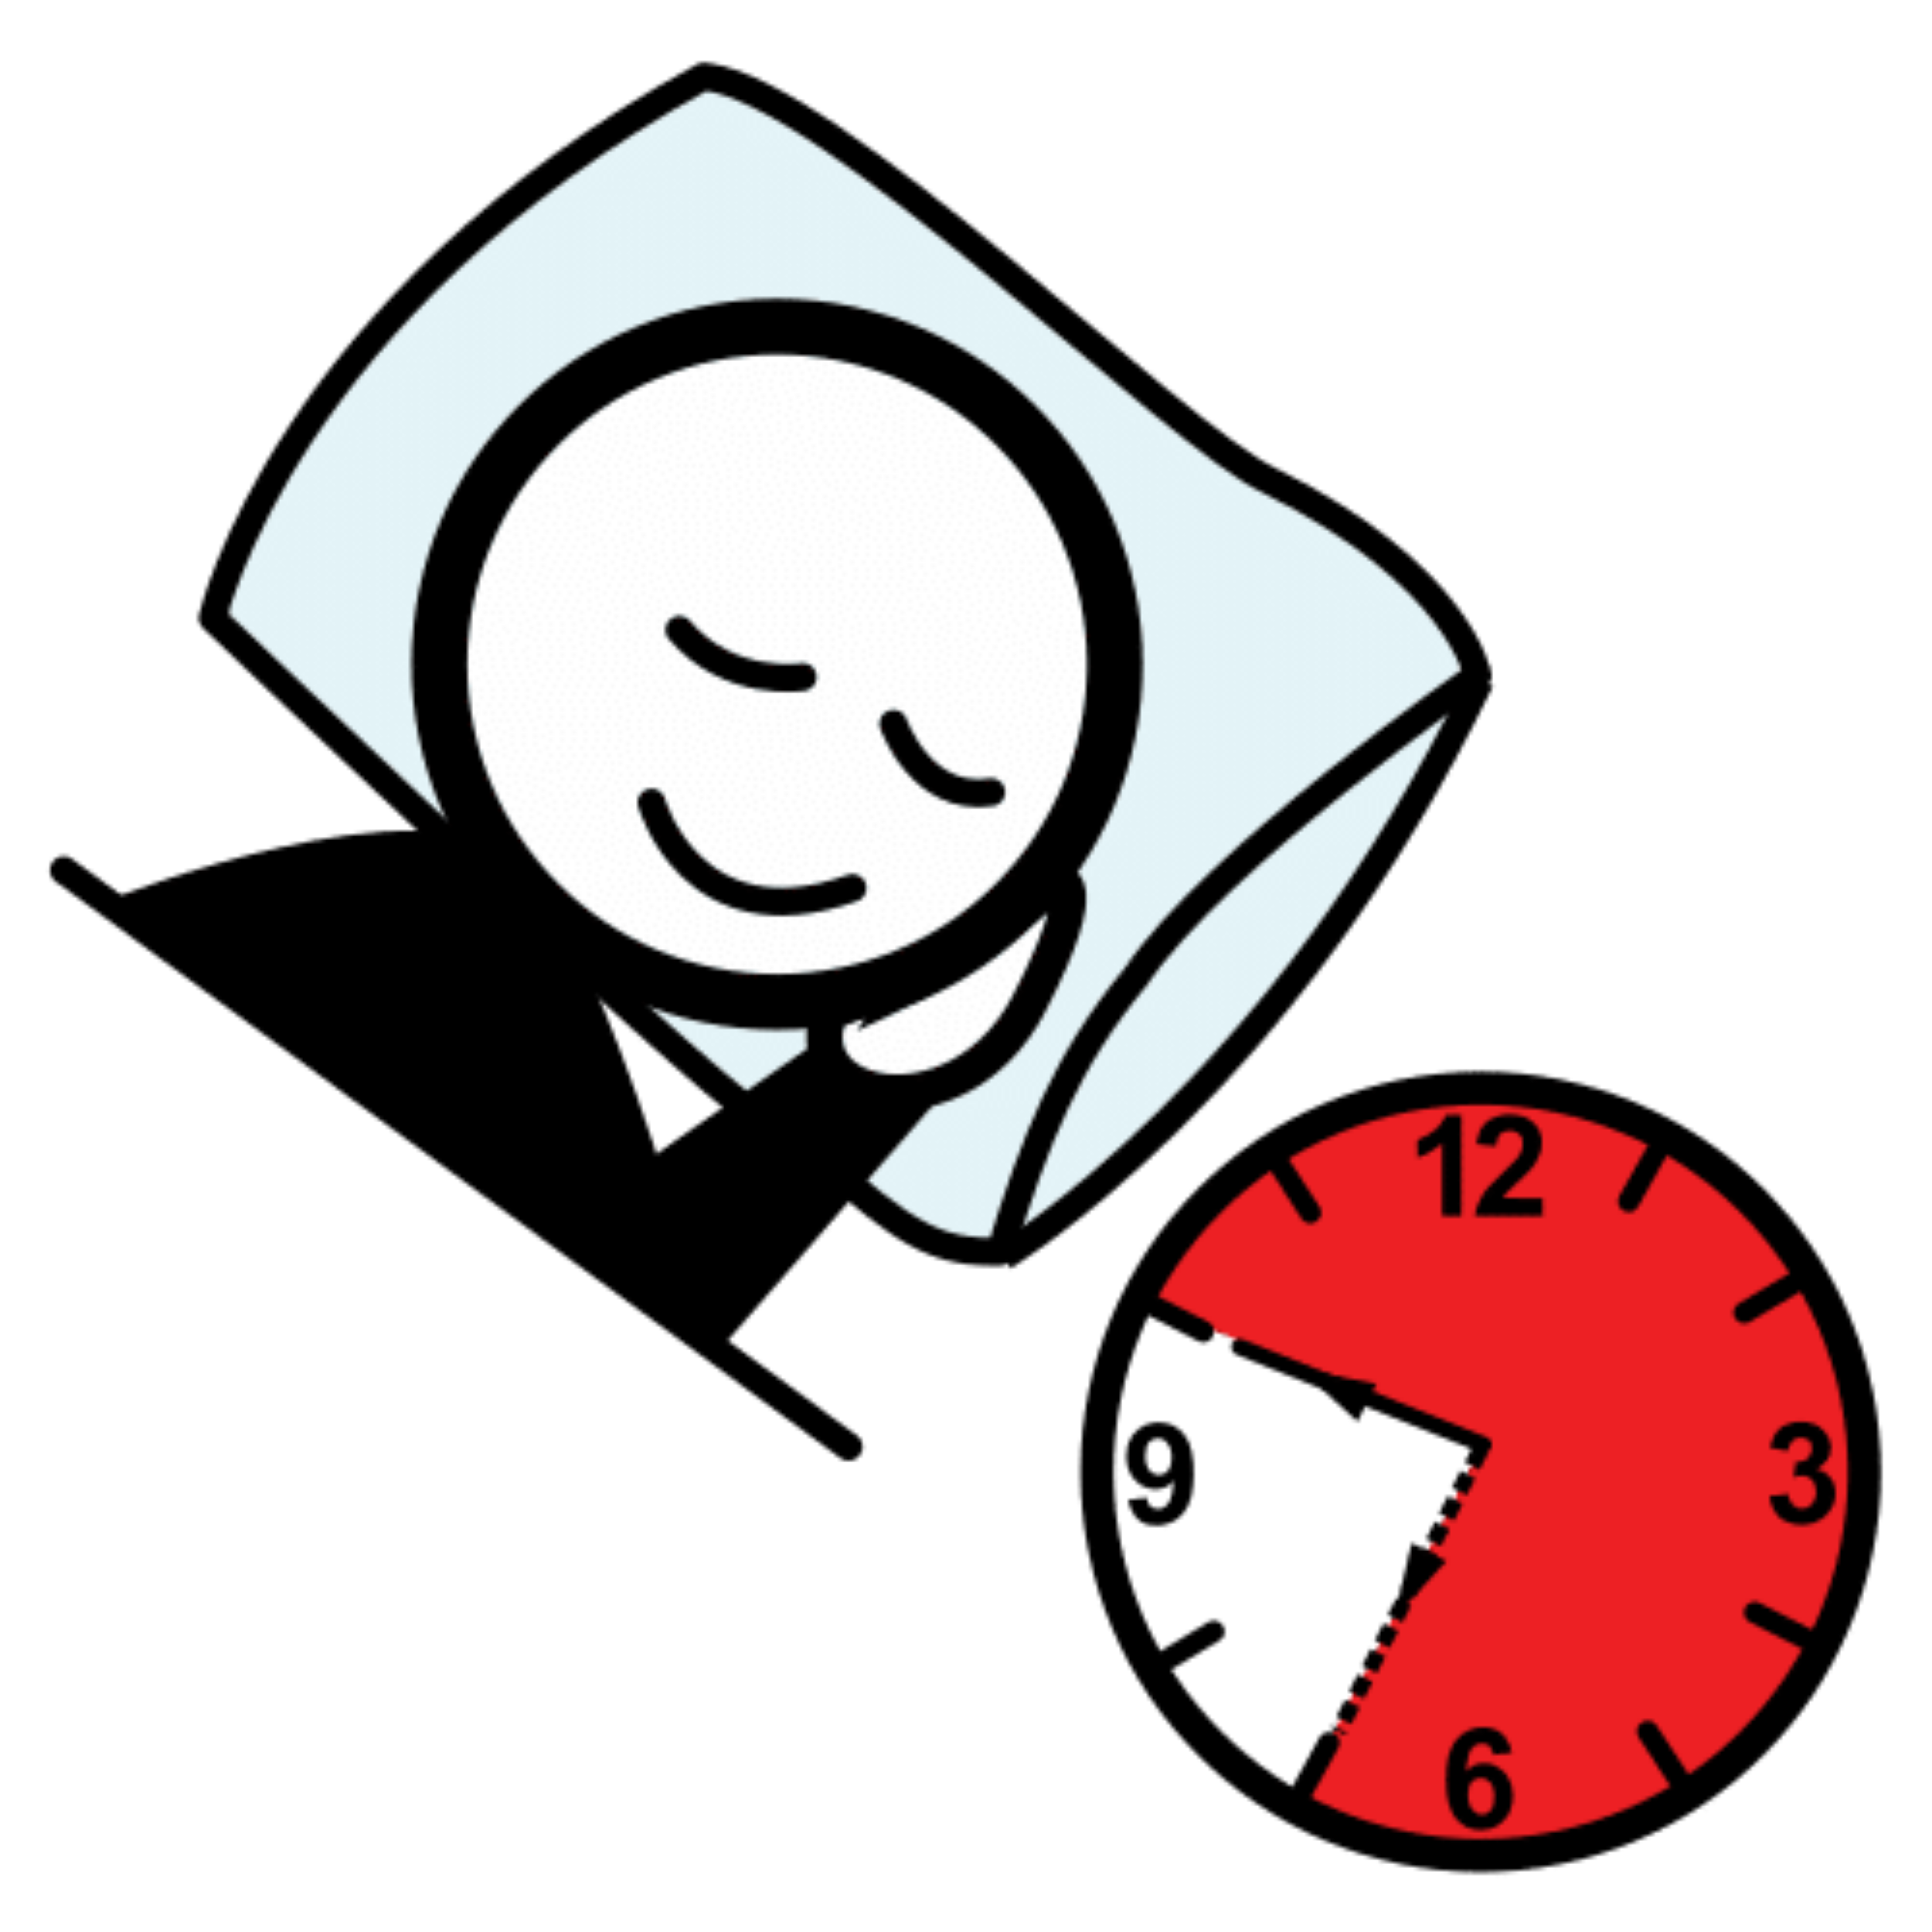 La imagen muestra a un personaje que duerme plácidamente, junto con un reloj que marca en rojo un gran número de horas